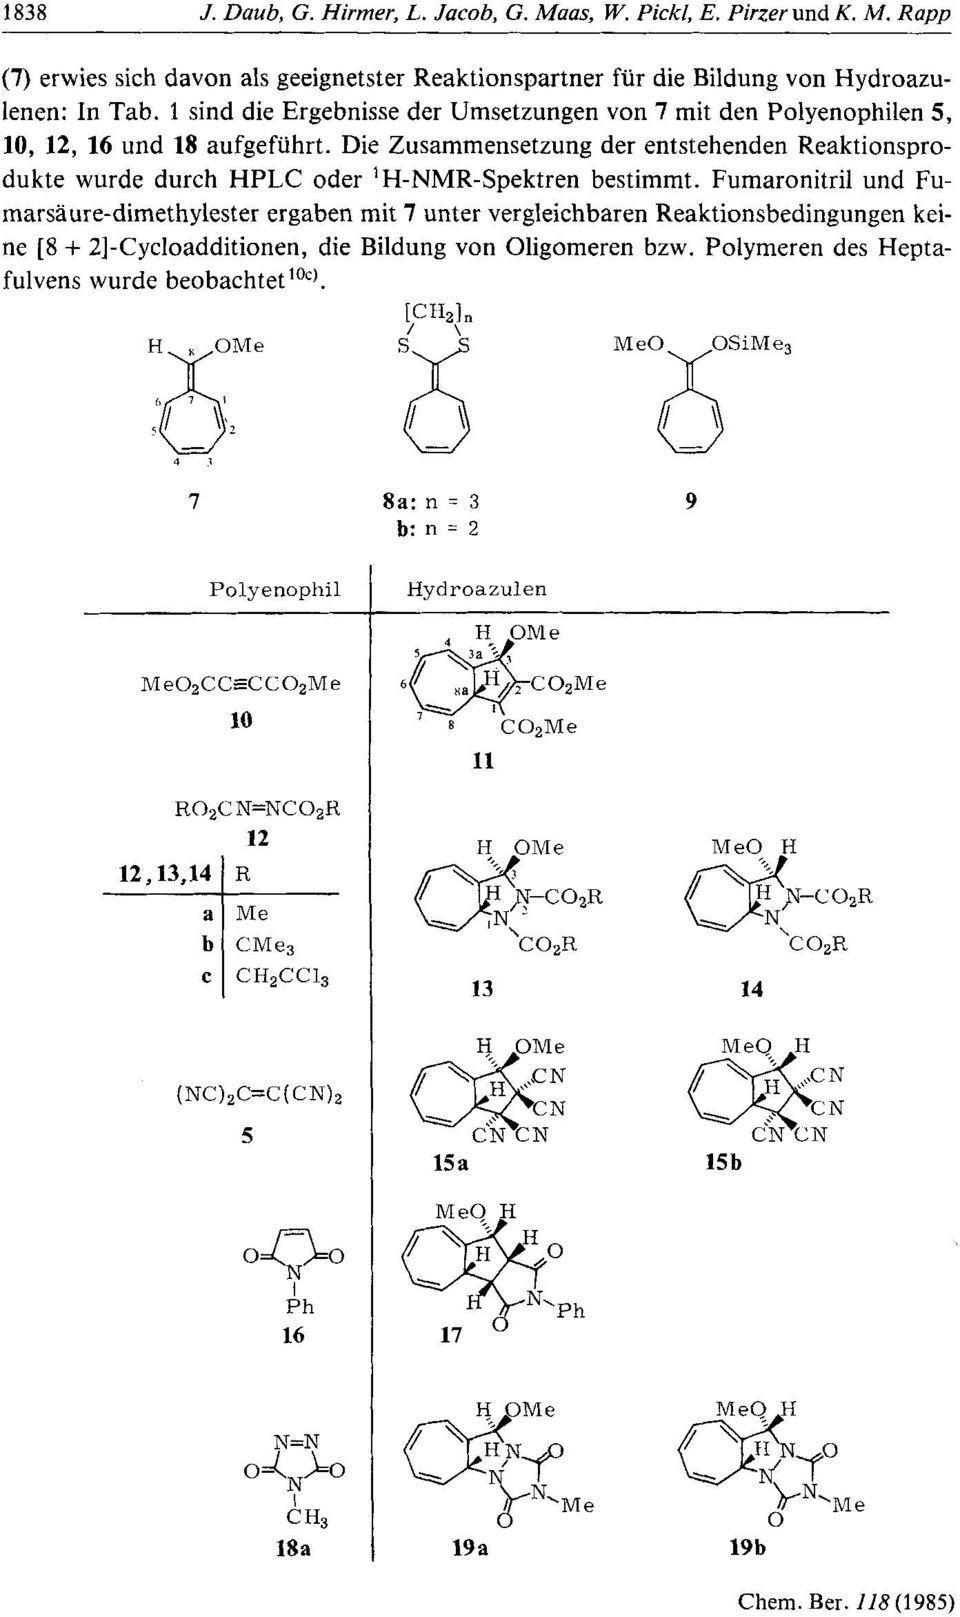 Die Zusammensetzung der entstehenden Reaktionsprodukte wurde durch HPLC oder 'H-NMR-Spektren bestimmt.